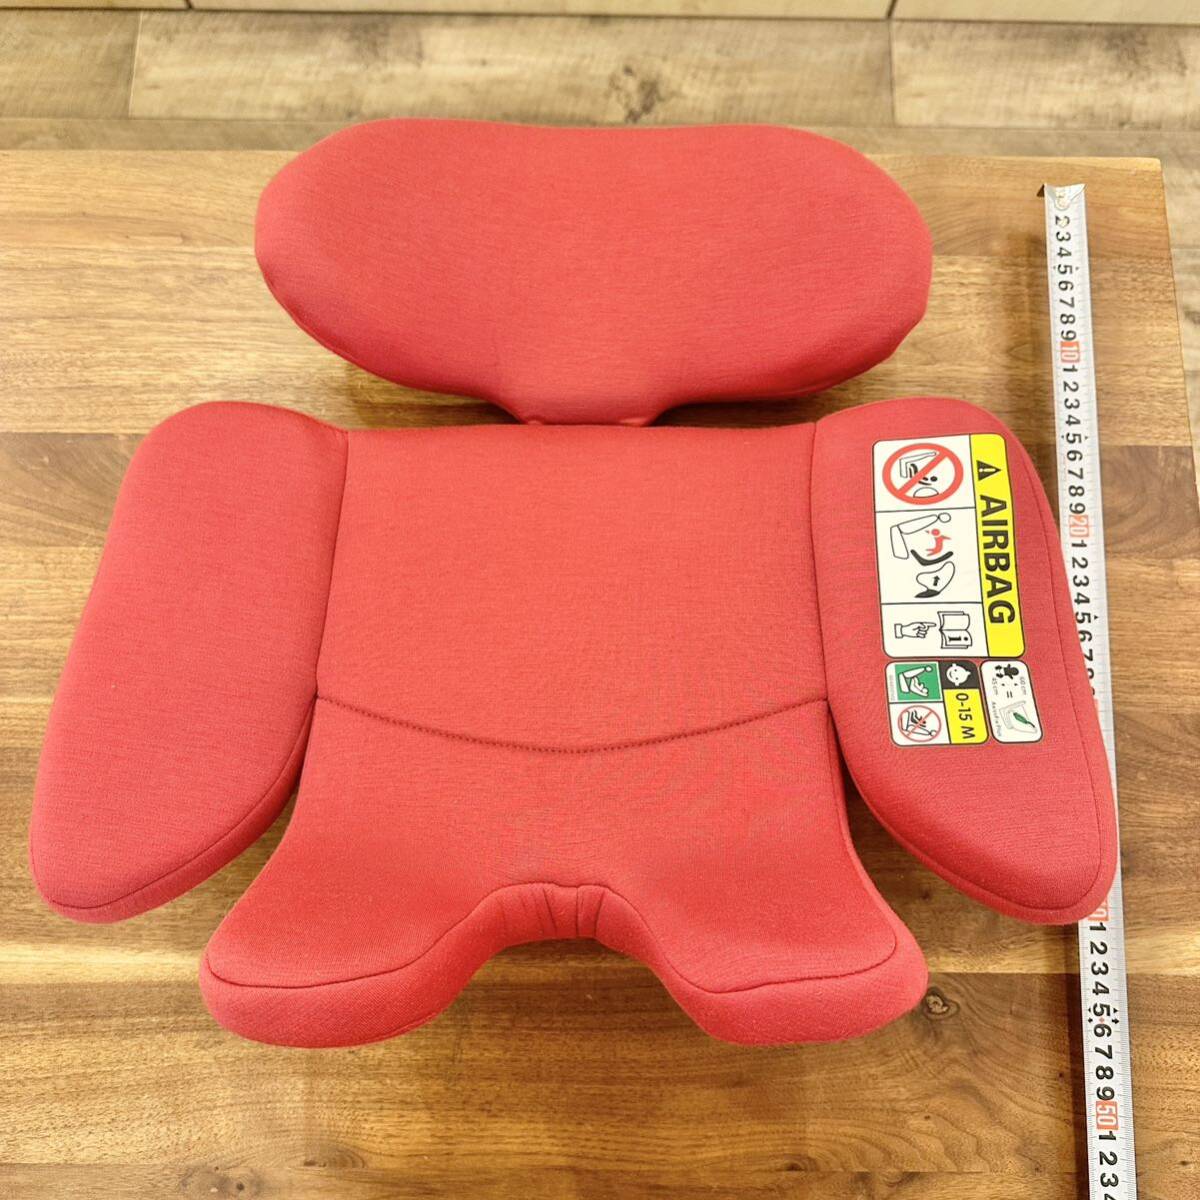  детское кресло новорожденный для подушка maxi kosi Axis фиксирующие детали плюс внутренний подушка красный прекрасный товар предварительный для стирка для 